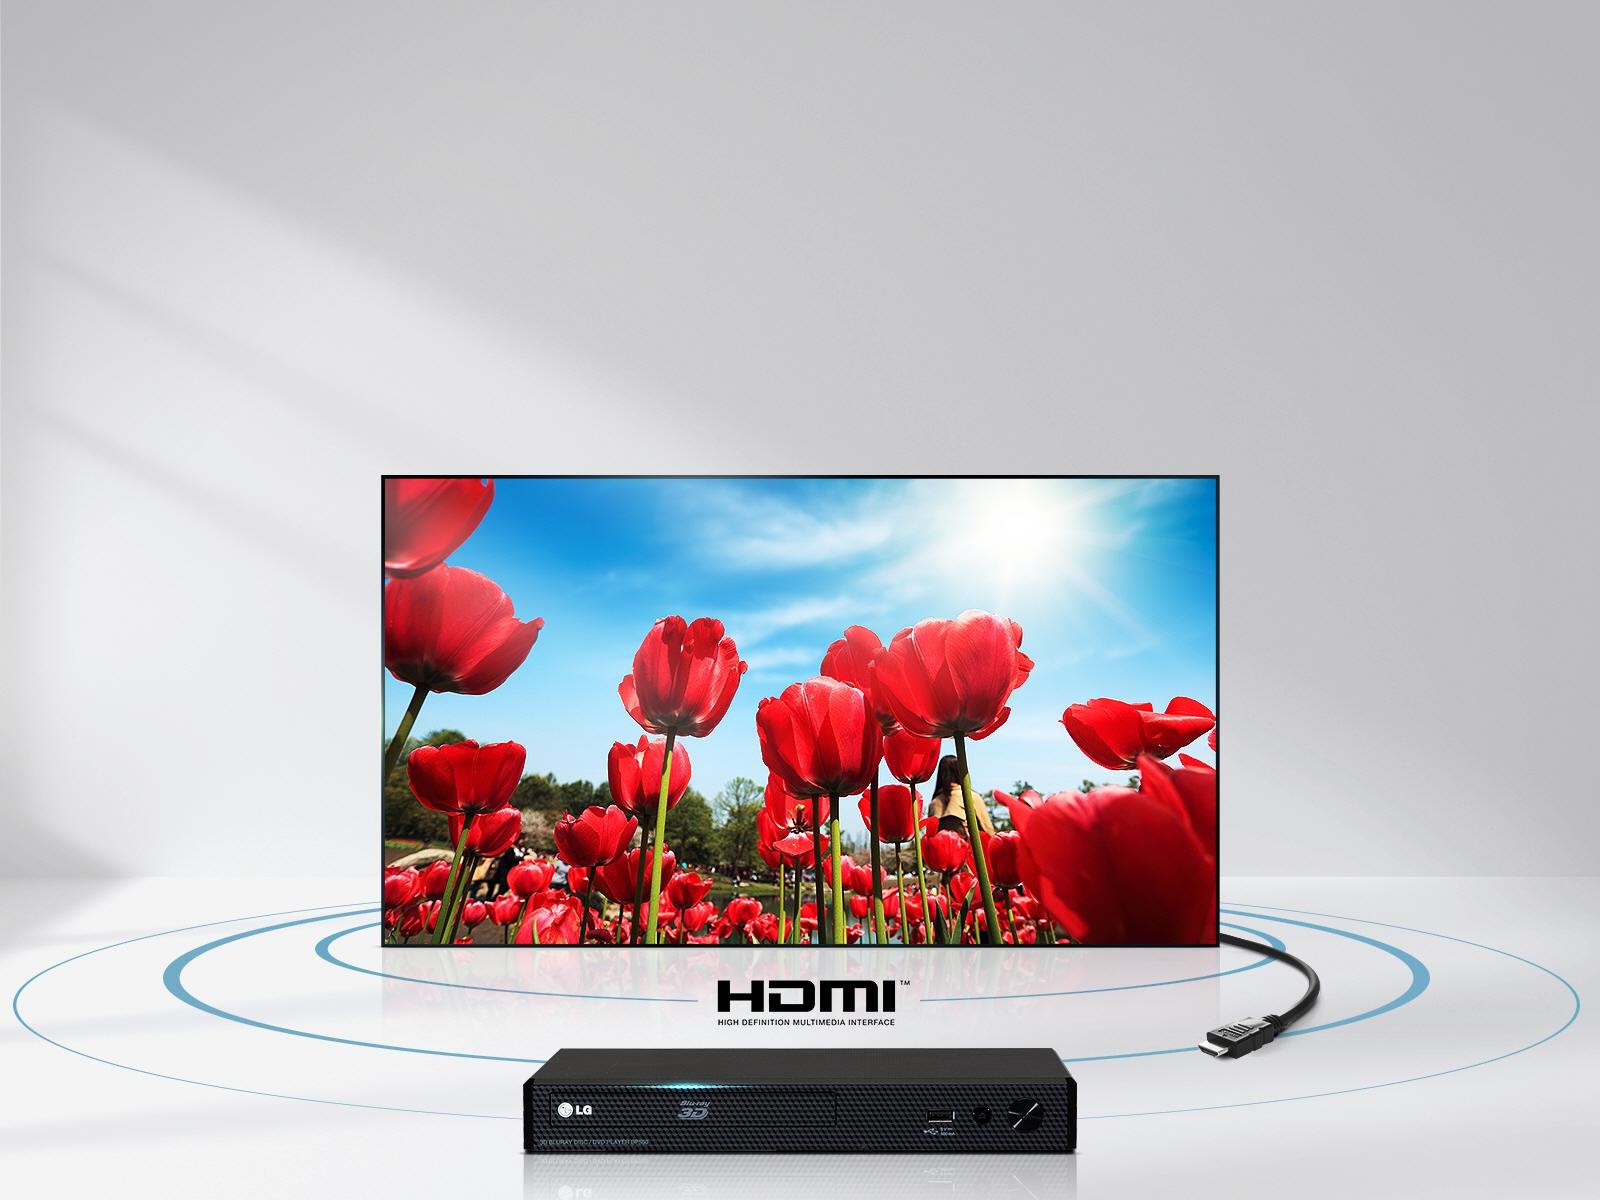 Najwyższej jakości audio i wideo przez HDMI